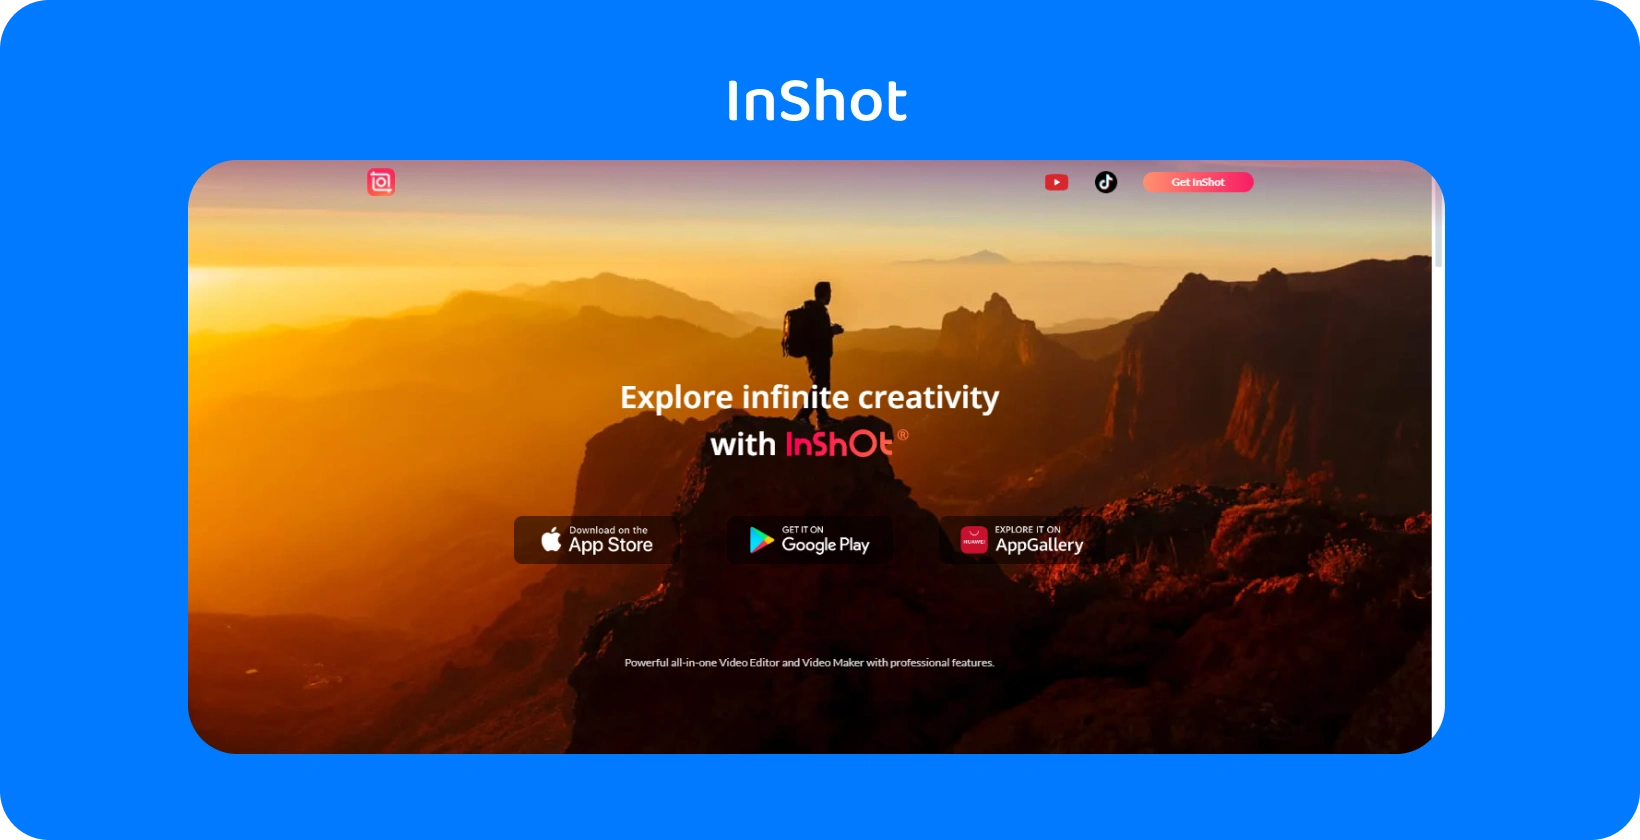 夕暮れ時のハイカーをフィーチャーしたInShotアプリの広告は、ビデオ編集で無限の創造性を探求するというアプリの約束を象徴しています。
